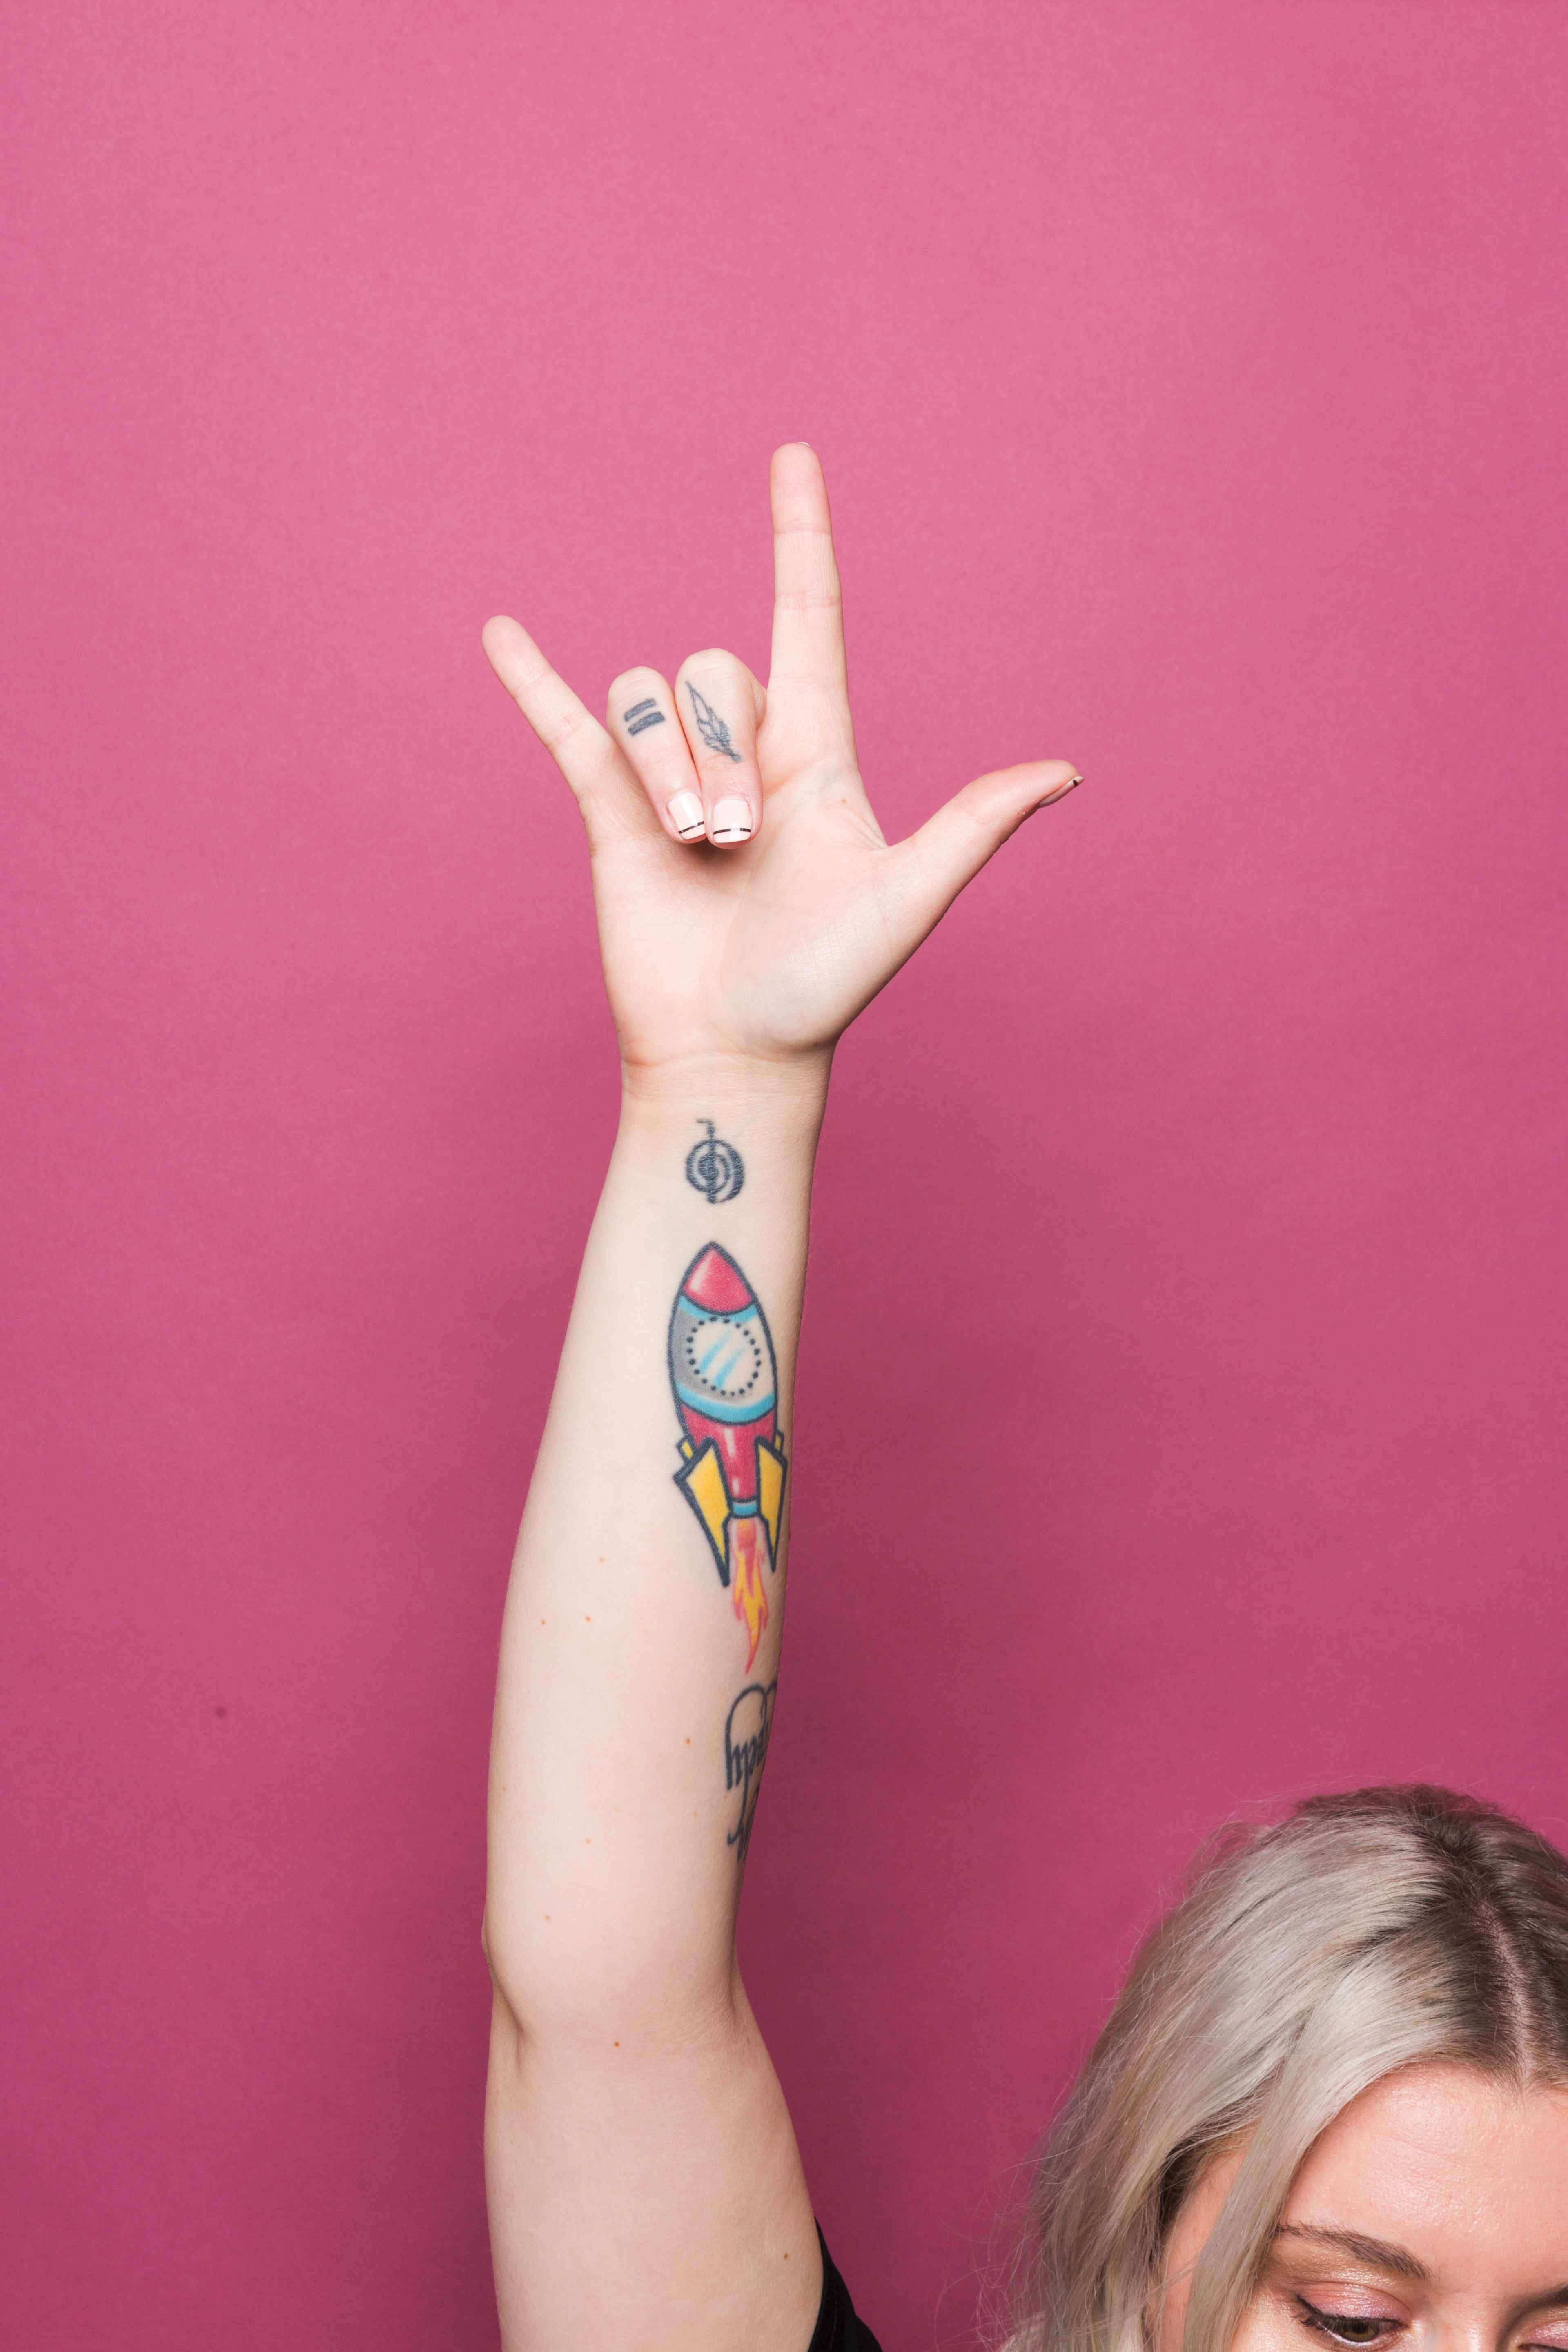 I Love You Heart Temporary Tattoo / ILY Sign Language Tattoo - Etsy